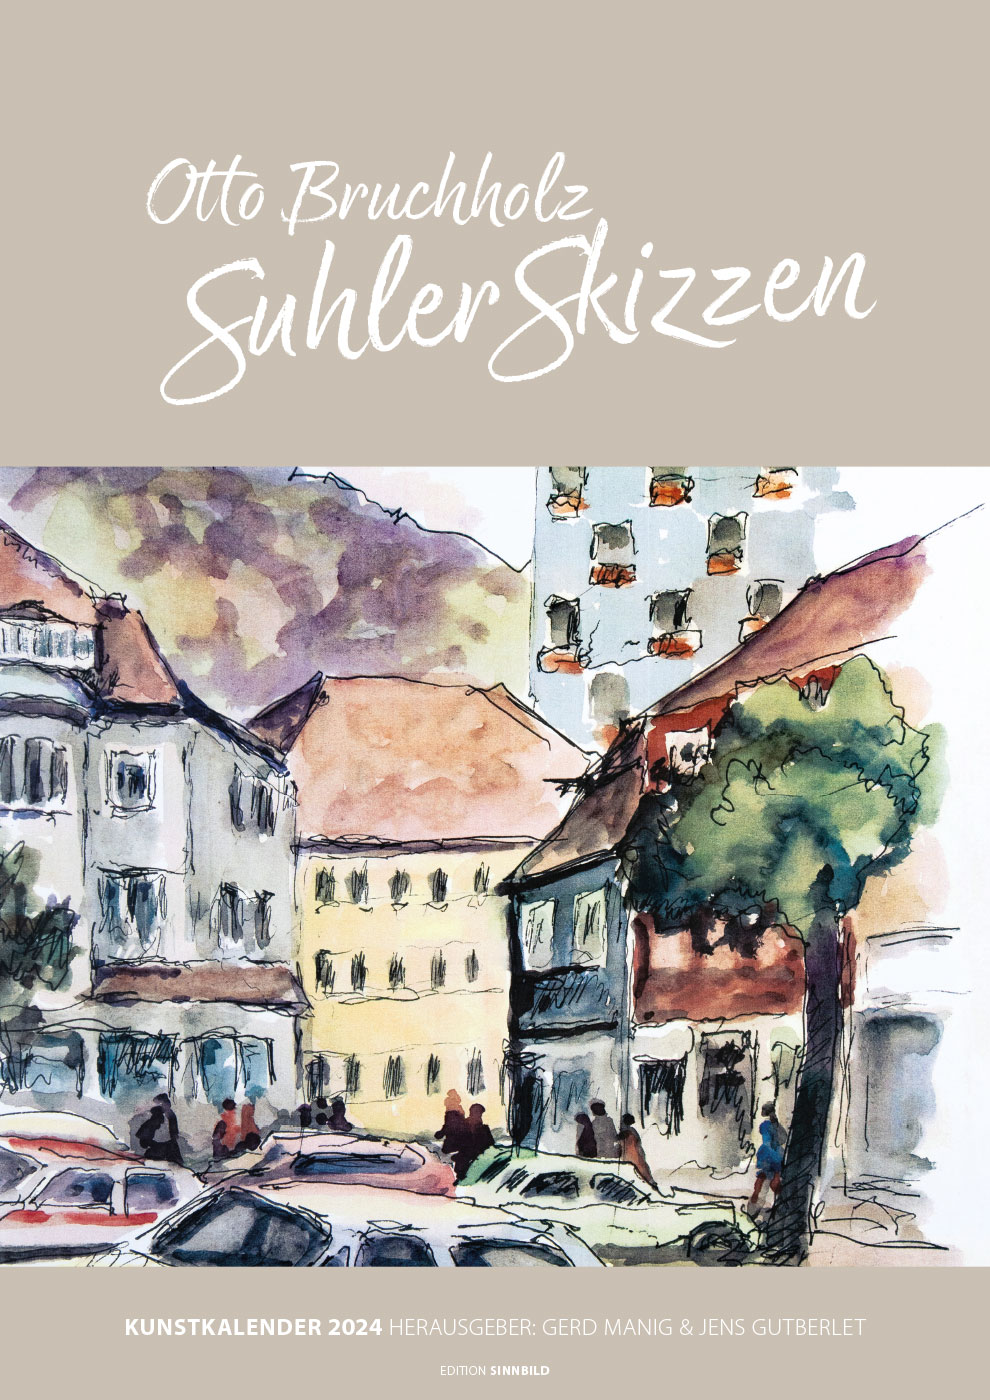 Kalender 2024 Otto Bruchholz - Suhler Skizzen . Herausgeber: Gerd Manig & Jens Gutberlet . Edition Sinnbild (Gestaltung: Andreas Kuhrt)